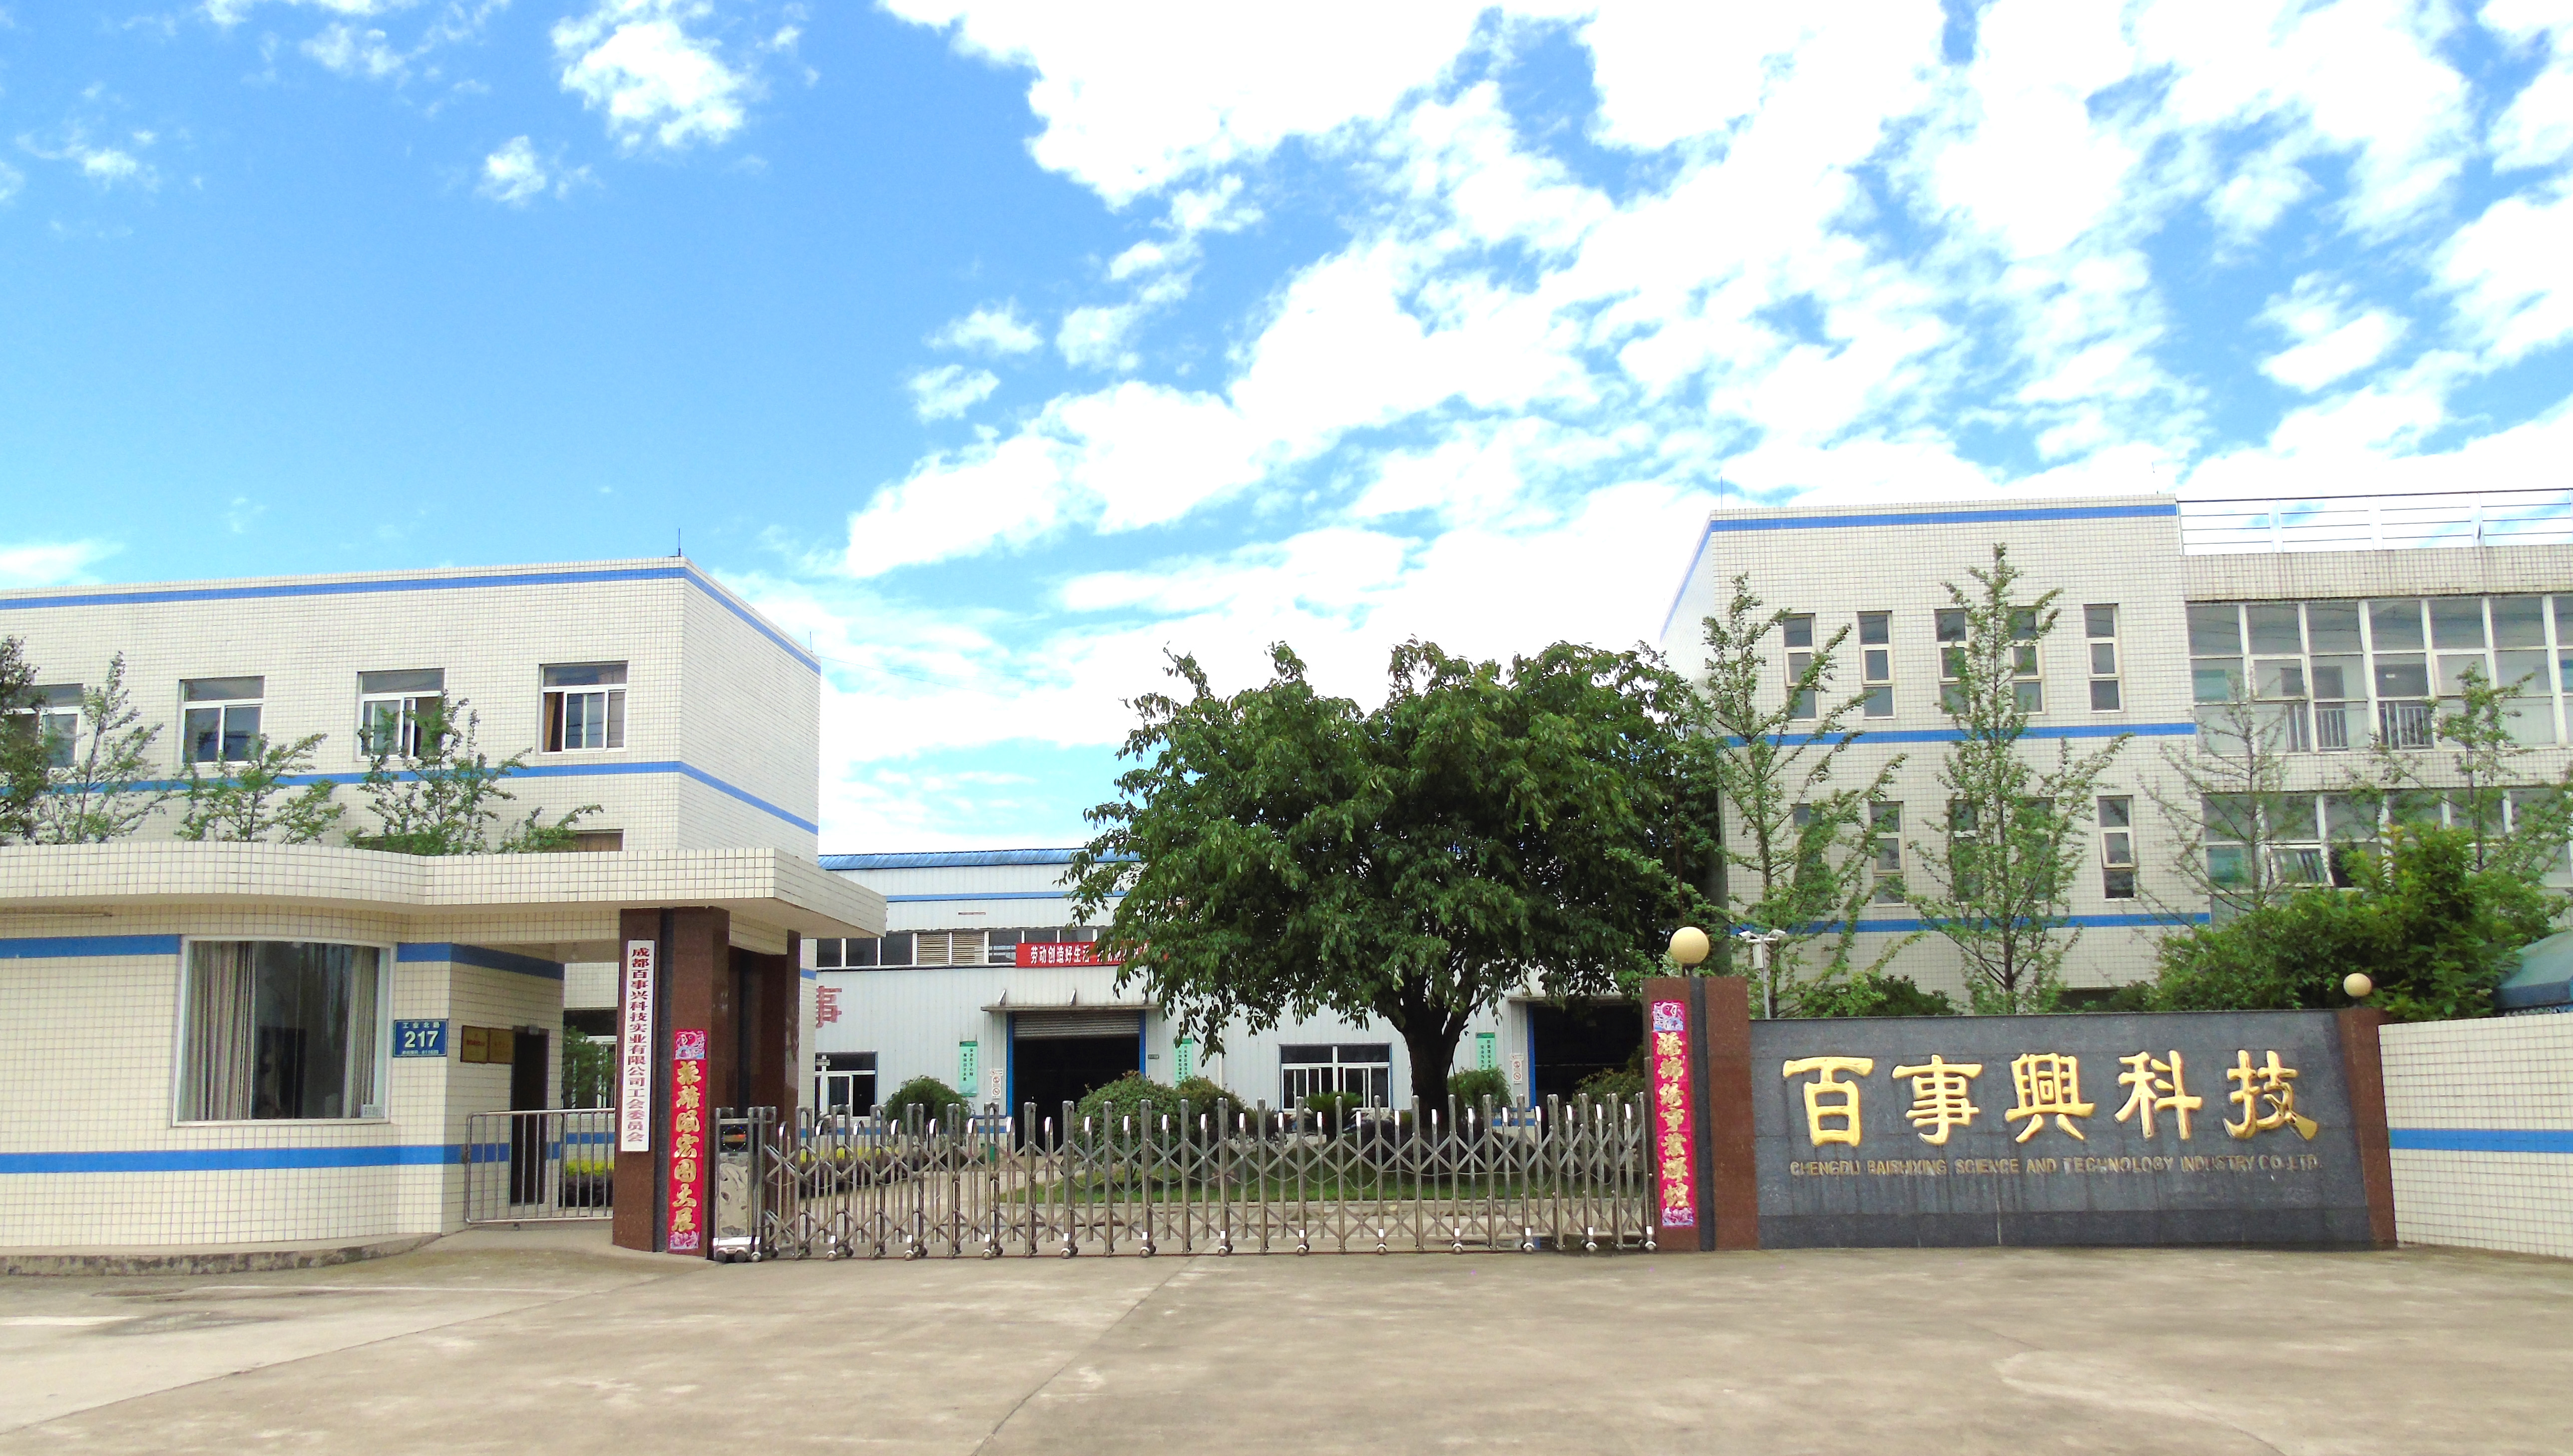 Sichuan Baishixing Bioscience Co.,Ltd